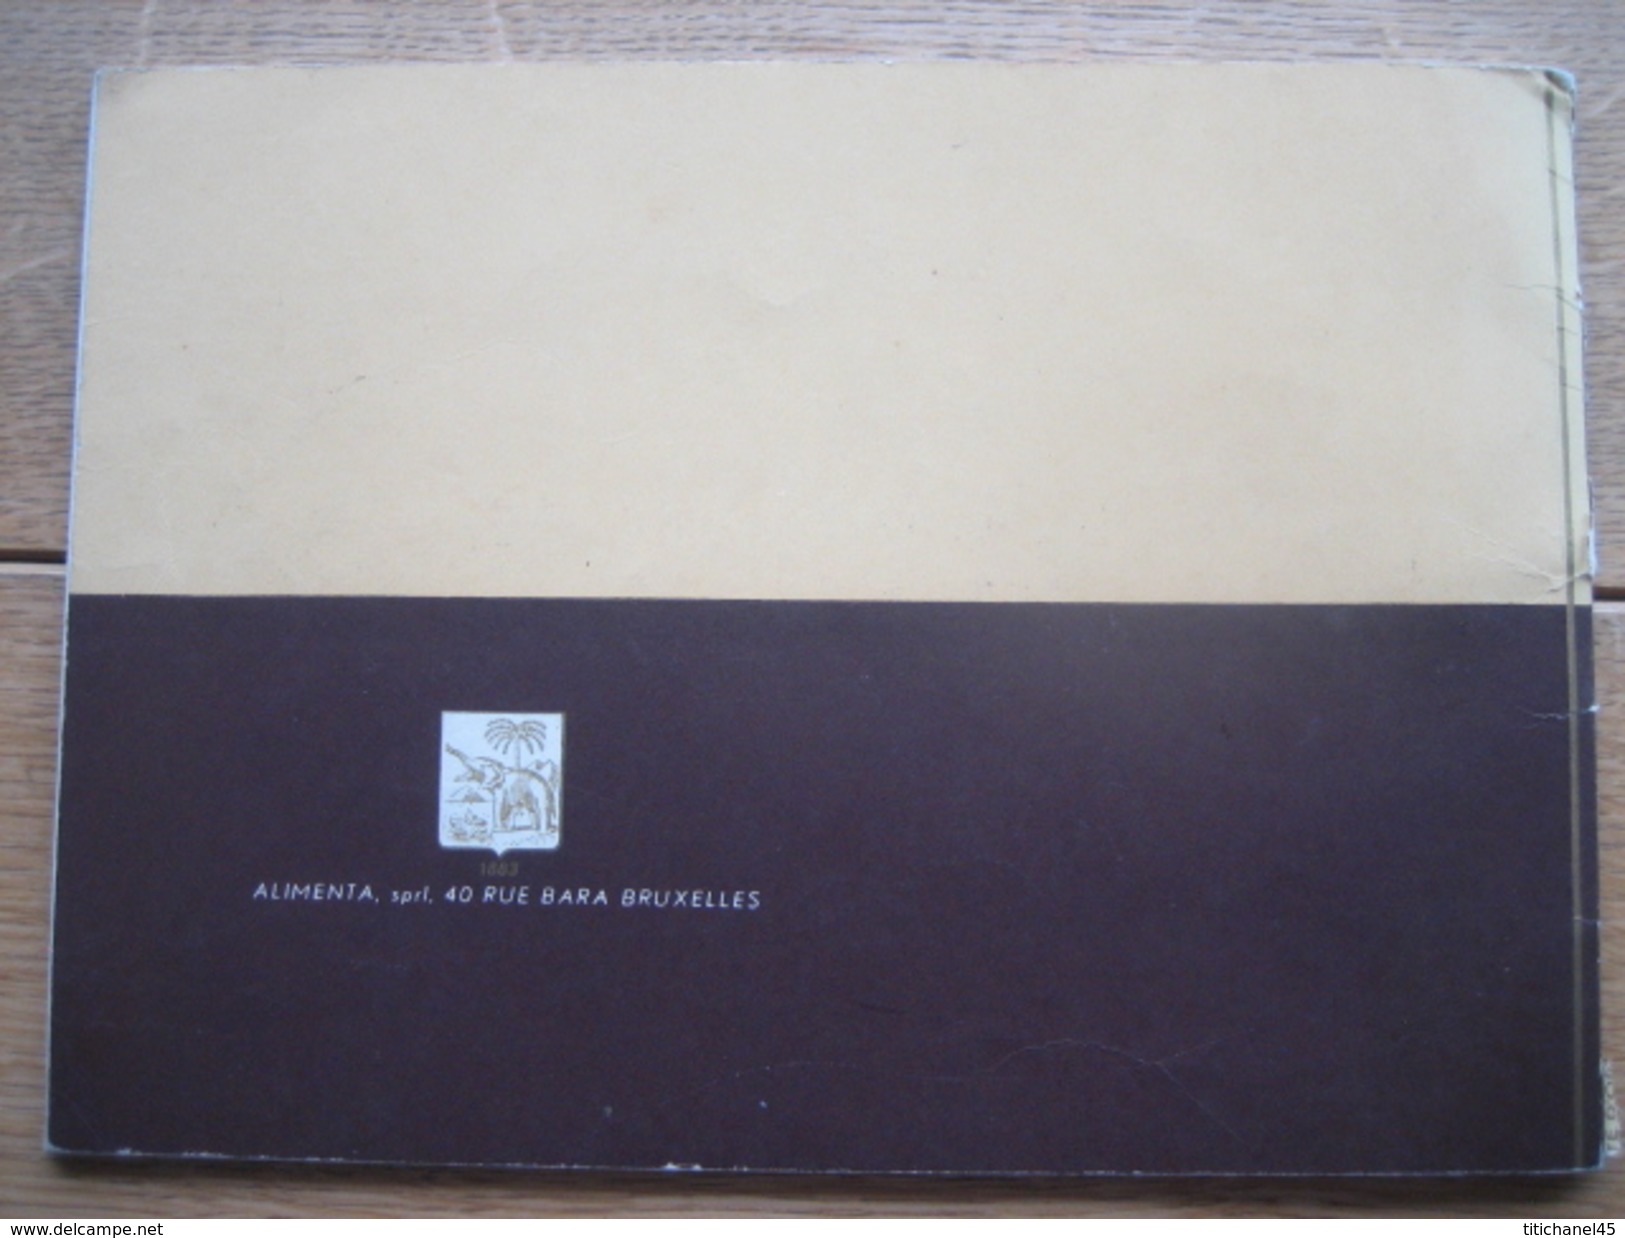 Catalogue publicitaire de 1960 LE BON CHOCOLAT COTE D'OR - Nombreuses photos sur la fabrication du chocolat - 40 pages